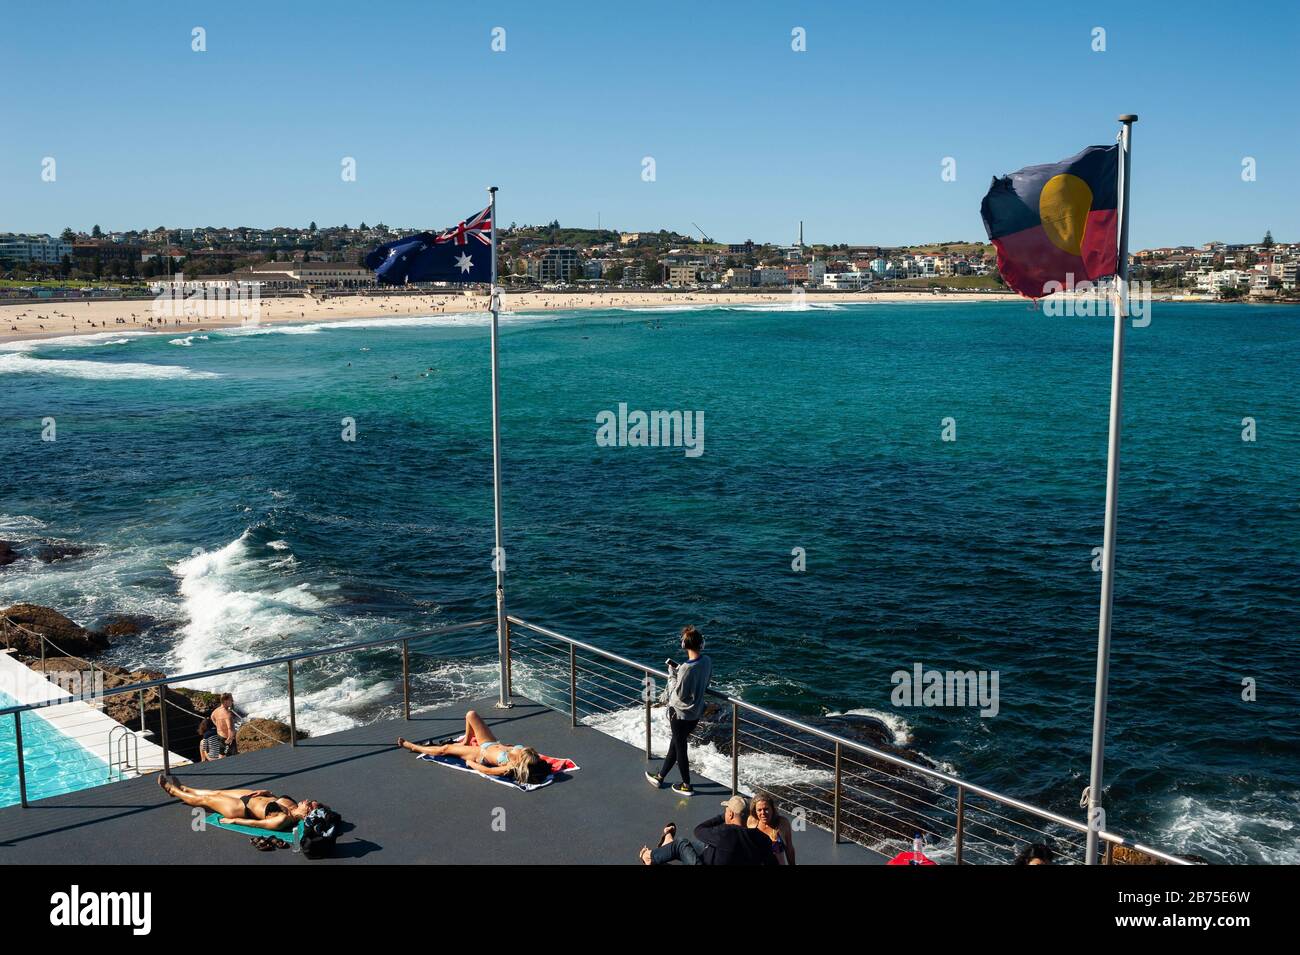 21.09.2018, Sydney, New South Wales, Australien - die Menschen sonnen sich auf der Sonnenterasse des Bondi Iceberg Schwimmvereins, während der Strand von Bondi Beach im Hintergrund zu sehen ist. [Automatisierte Übersetzung] Stockfoto